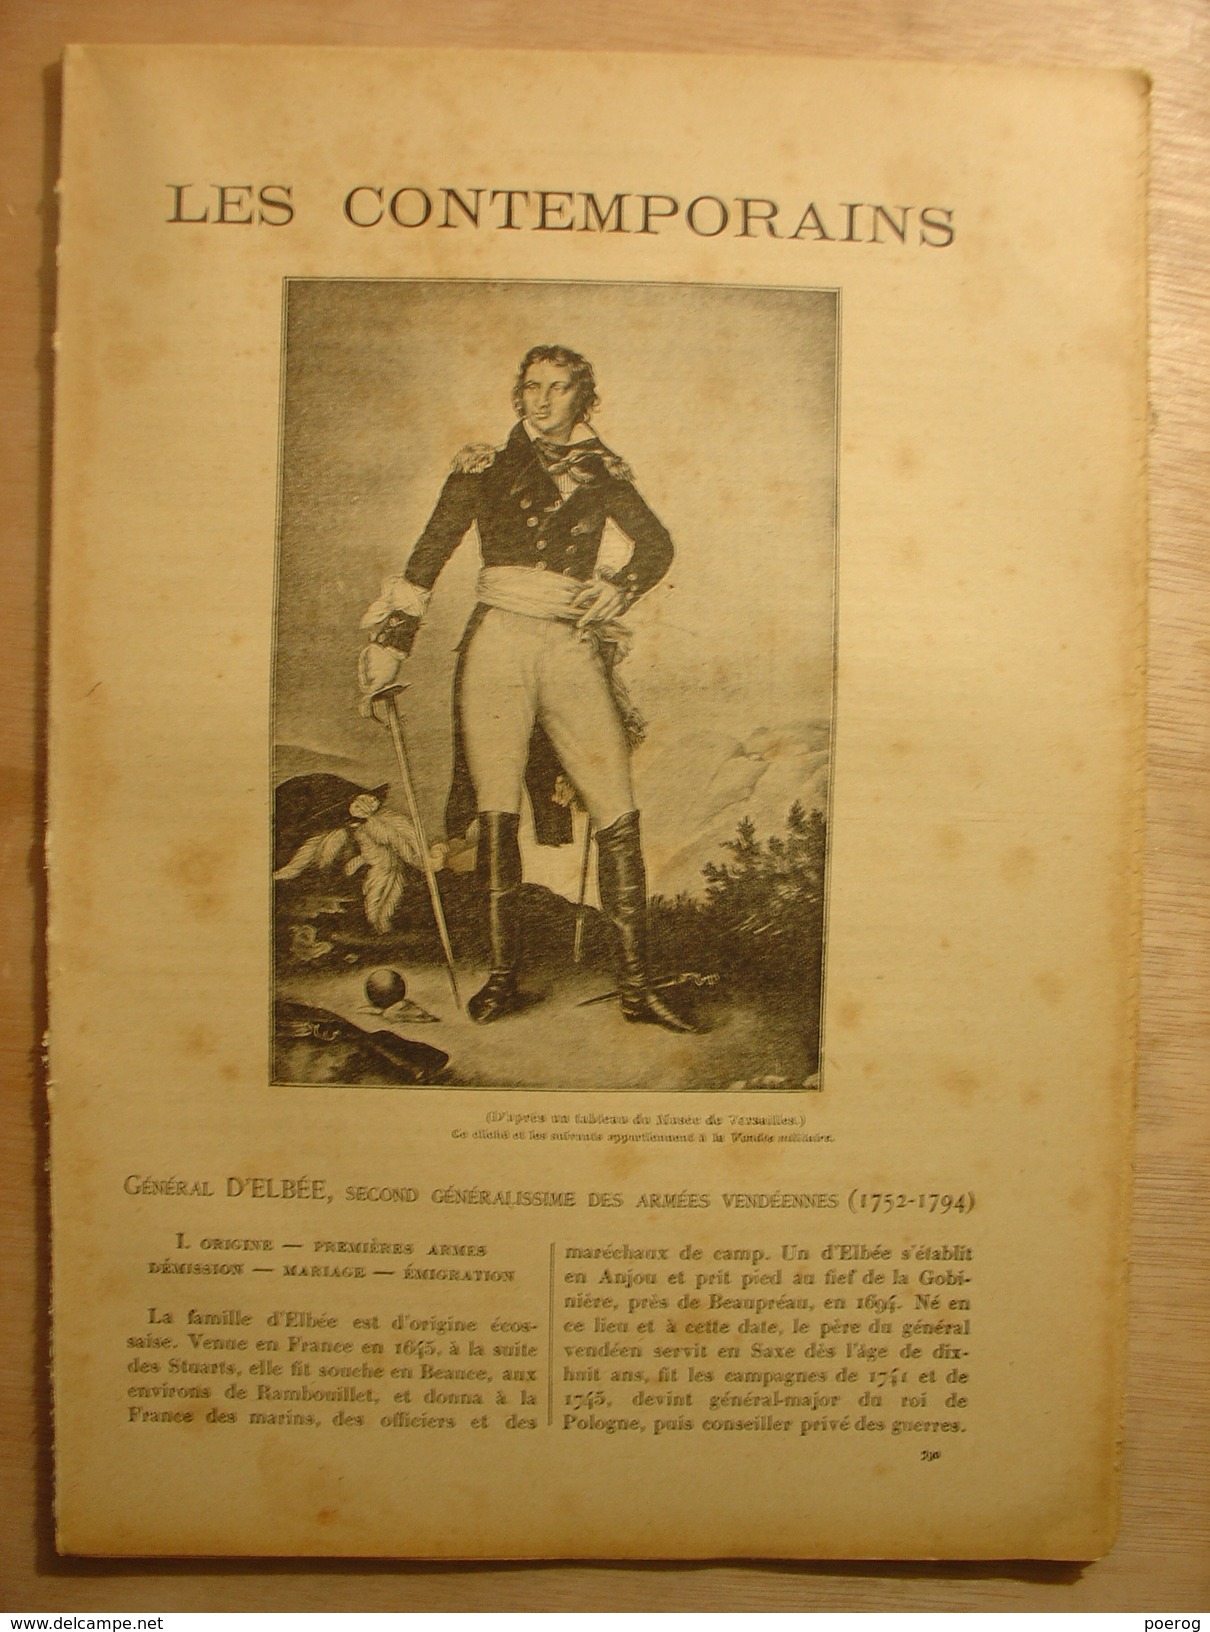 GENERAL D'ELBEE SECOND GENERALISSIME DES ARMEES VENDEENNES (1760-1793) - LES CONTEMPORAINS - MONOGRAPHIE AIMONT - Vendée - Biografía